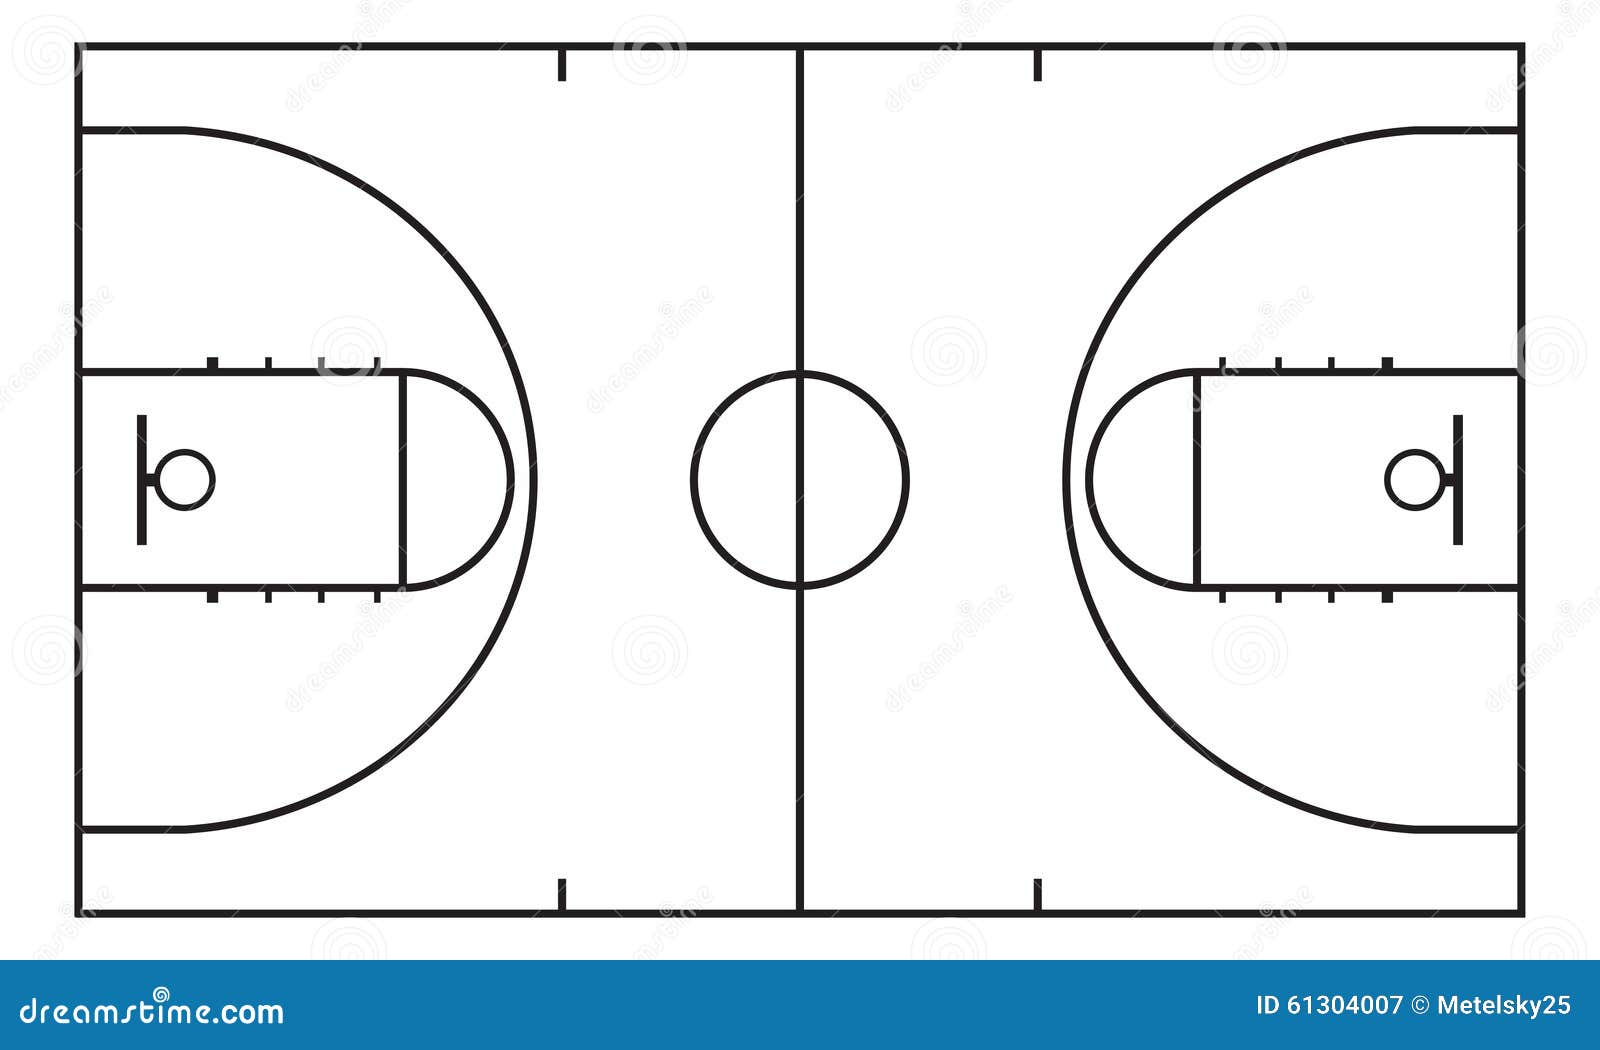 1 18 22 29. Разметка баскетбольного поля схема. Баскетбольное поле схема разметки линий. Баскетбол поле схема. Баскетбольная площадка схема.